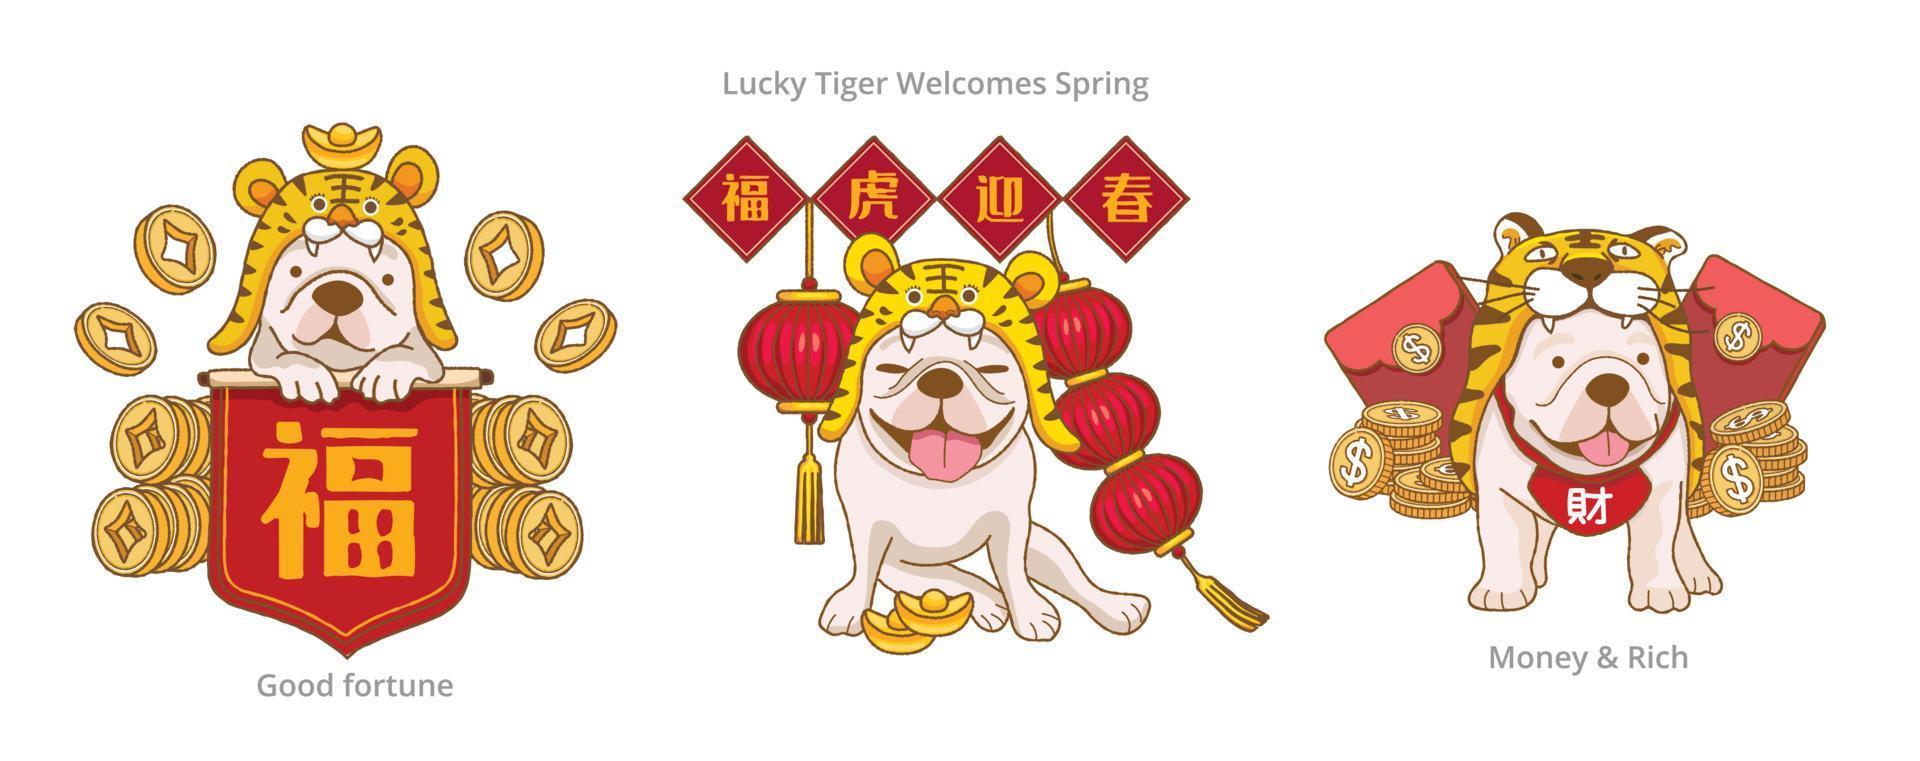 Süße französische Bulldogge im Tigerkostüm und mit den roten Frühlingspaaren sagen Sie Segen und glücklicher Tiger begrüßen den Frühling, um das chinesische Neujahr zu feiern vektor